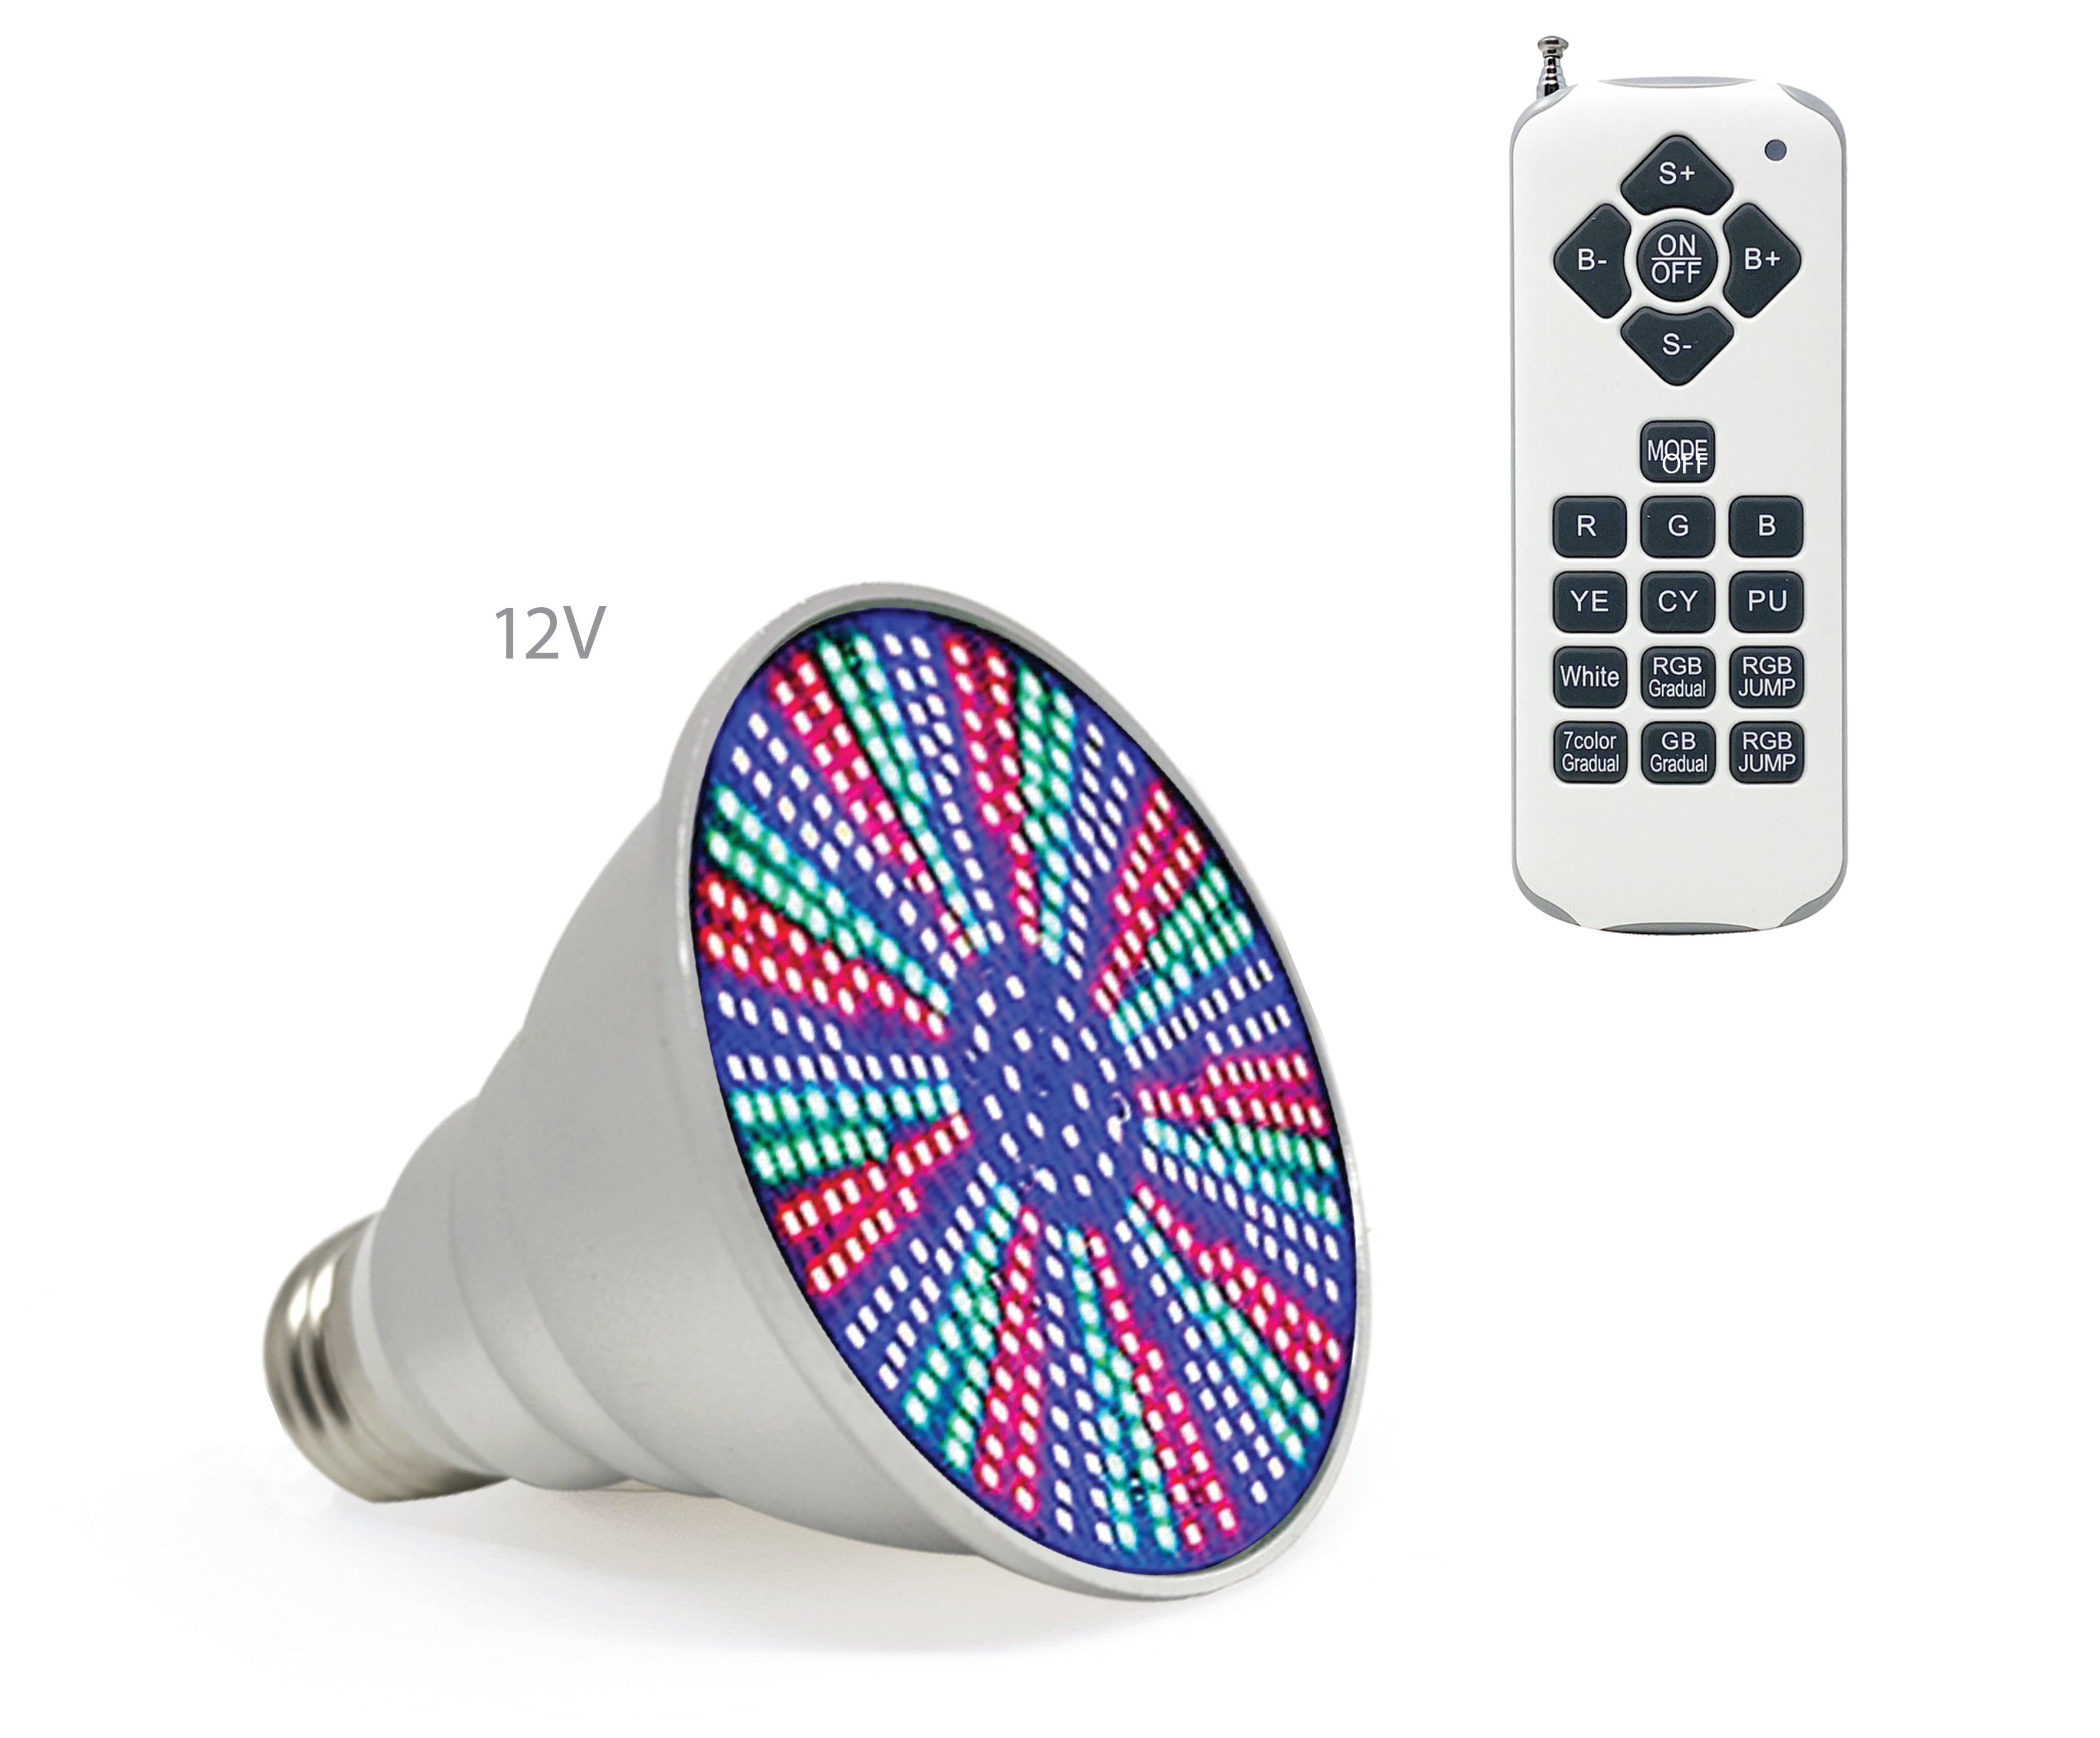 Ampoule LED Life-Bulb pour spa, bain à remous | 12 V 10 W RVB-B | Garantie de remplacement à vie | Ampoule de remplacement pour Pentair, Hayward et autres luminaires